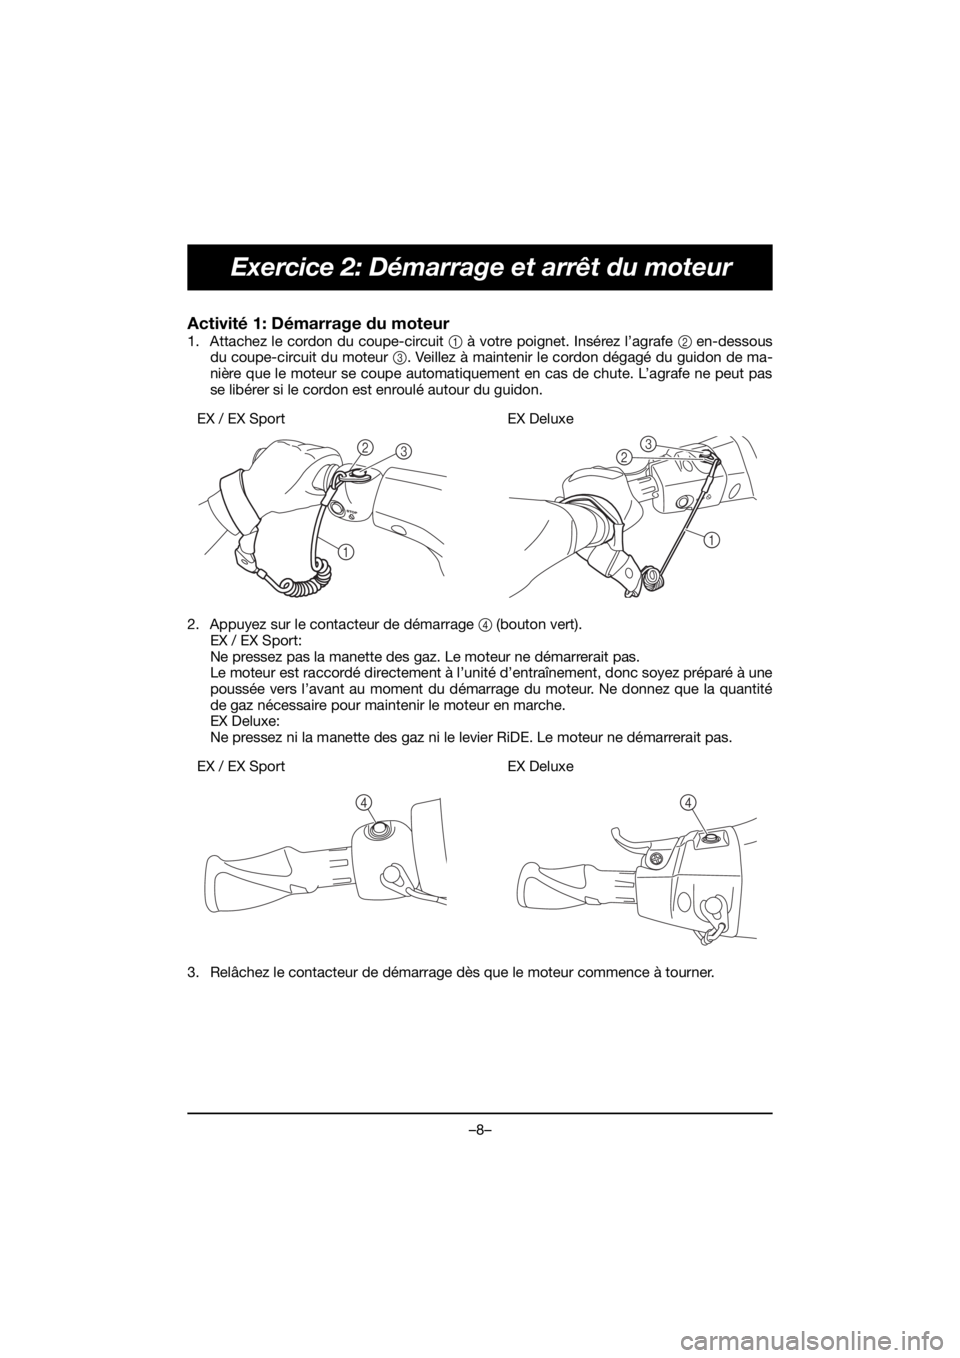 YAMAHA EX 2019  Manual de utilização (in Portuguese) –8–
Exercice 2: Démarrage et arrêt du moteur
Activité 1: Démarrage du moteur 
1. Attachez le cordon du coupe-circuit 1 à votre poignet. Insérez l’agrafe 2 en-dessous
du coupe-circuit du mo